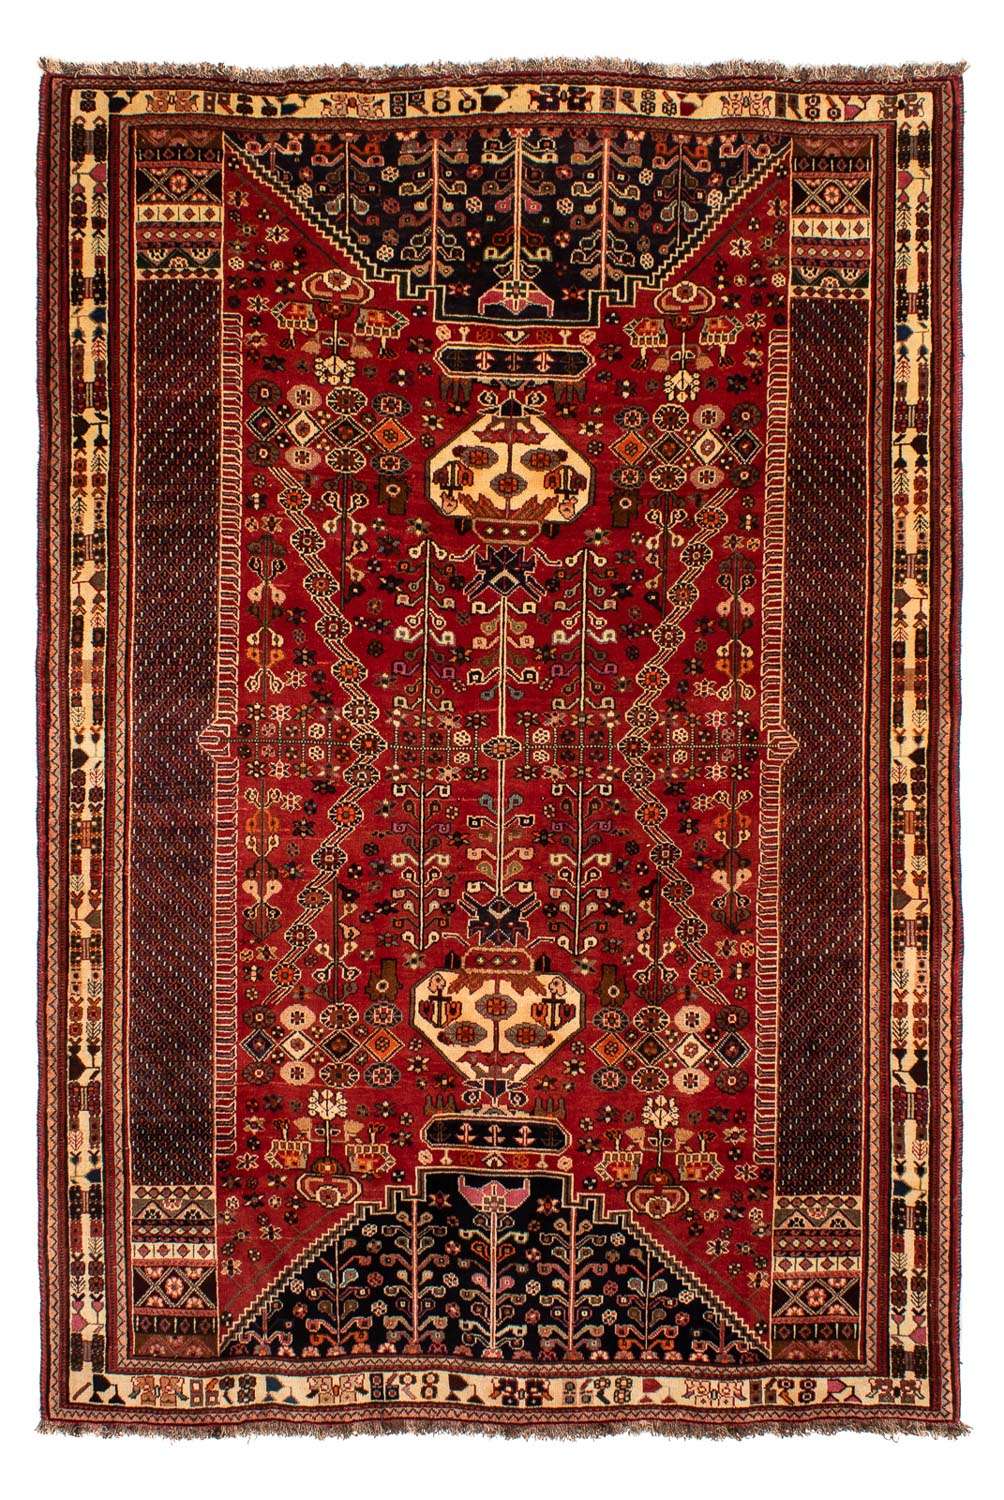 Alfombra persa - Nómada - 275 x 190 cm - rojo oscuro